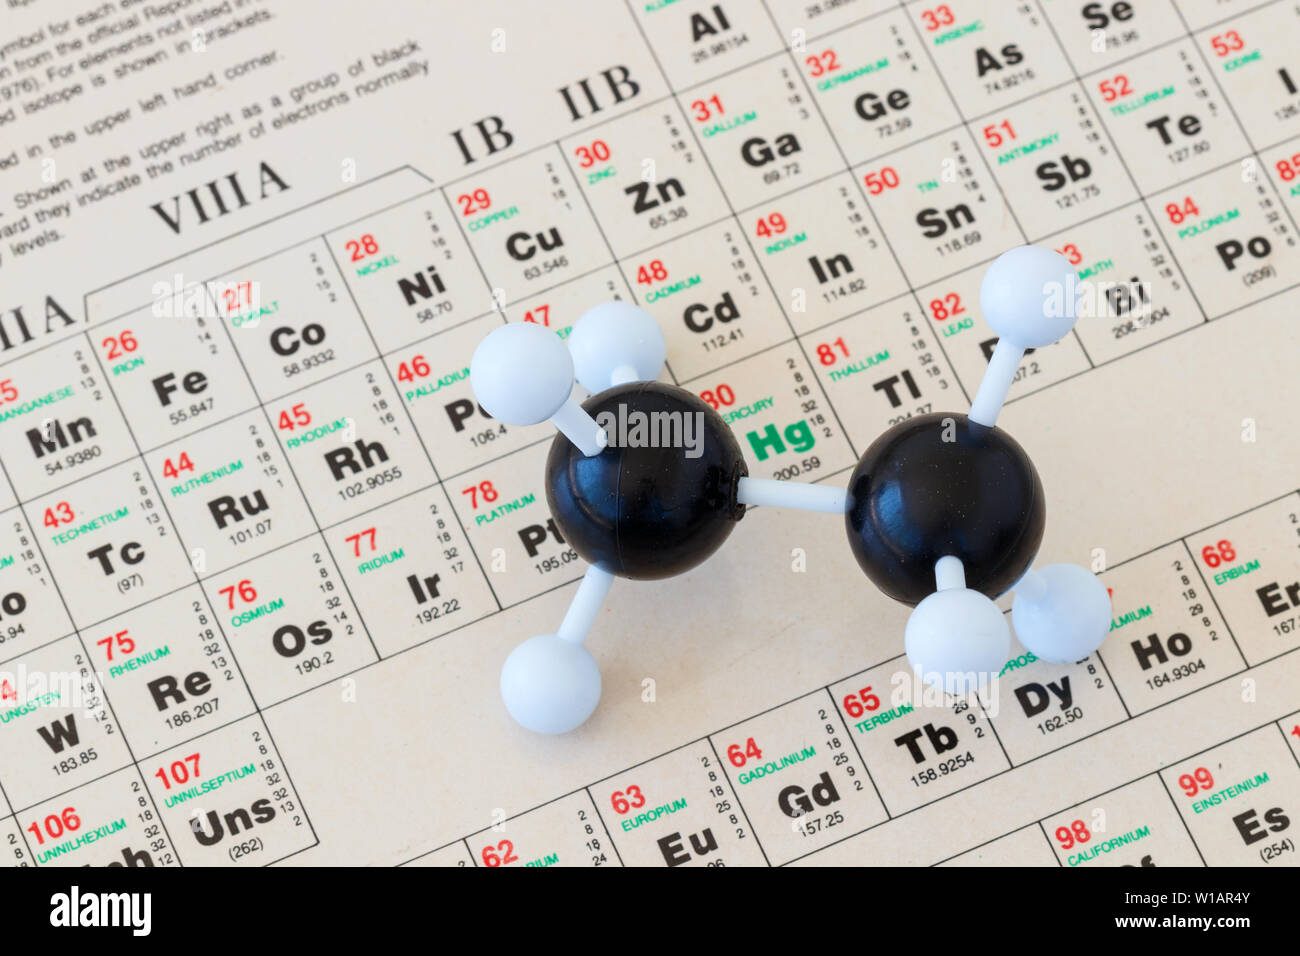 Tavola periodica degli elementi con un modello a sfera e bastone di plastica di una molecola di etano (C2H6). Foto Stock